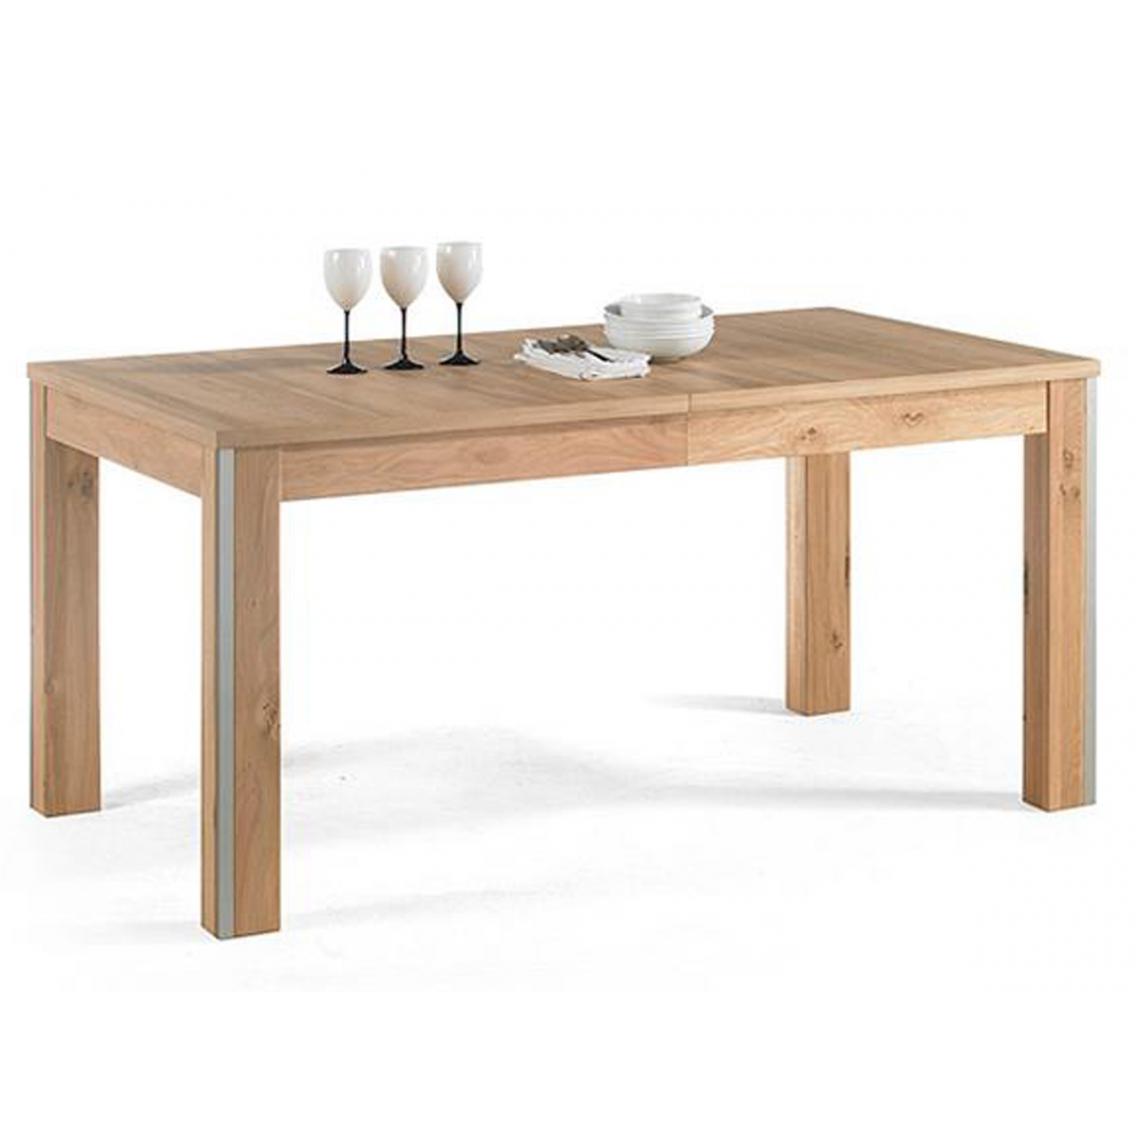 Pegane - Table à manger extensible en chêne sauvage - L.160-260 x H.77 x P.90 cm - Tables à manger